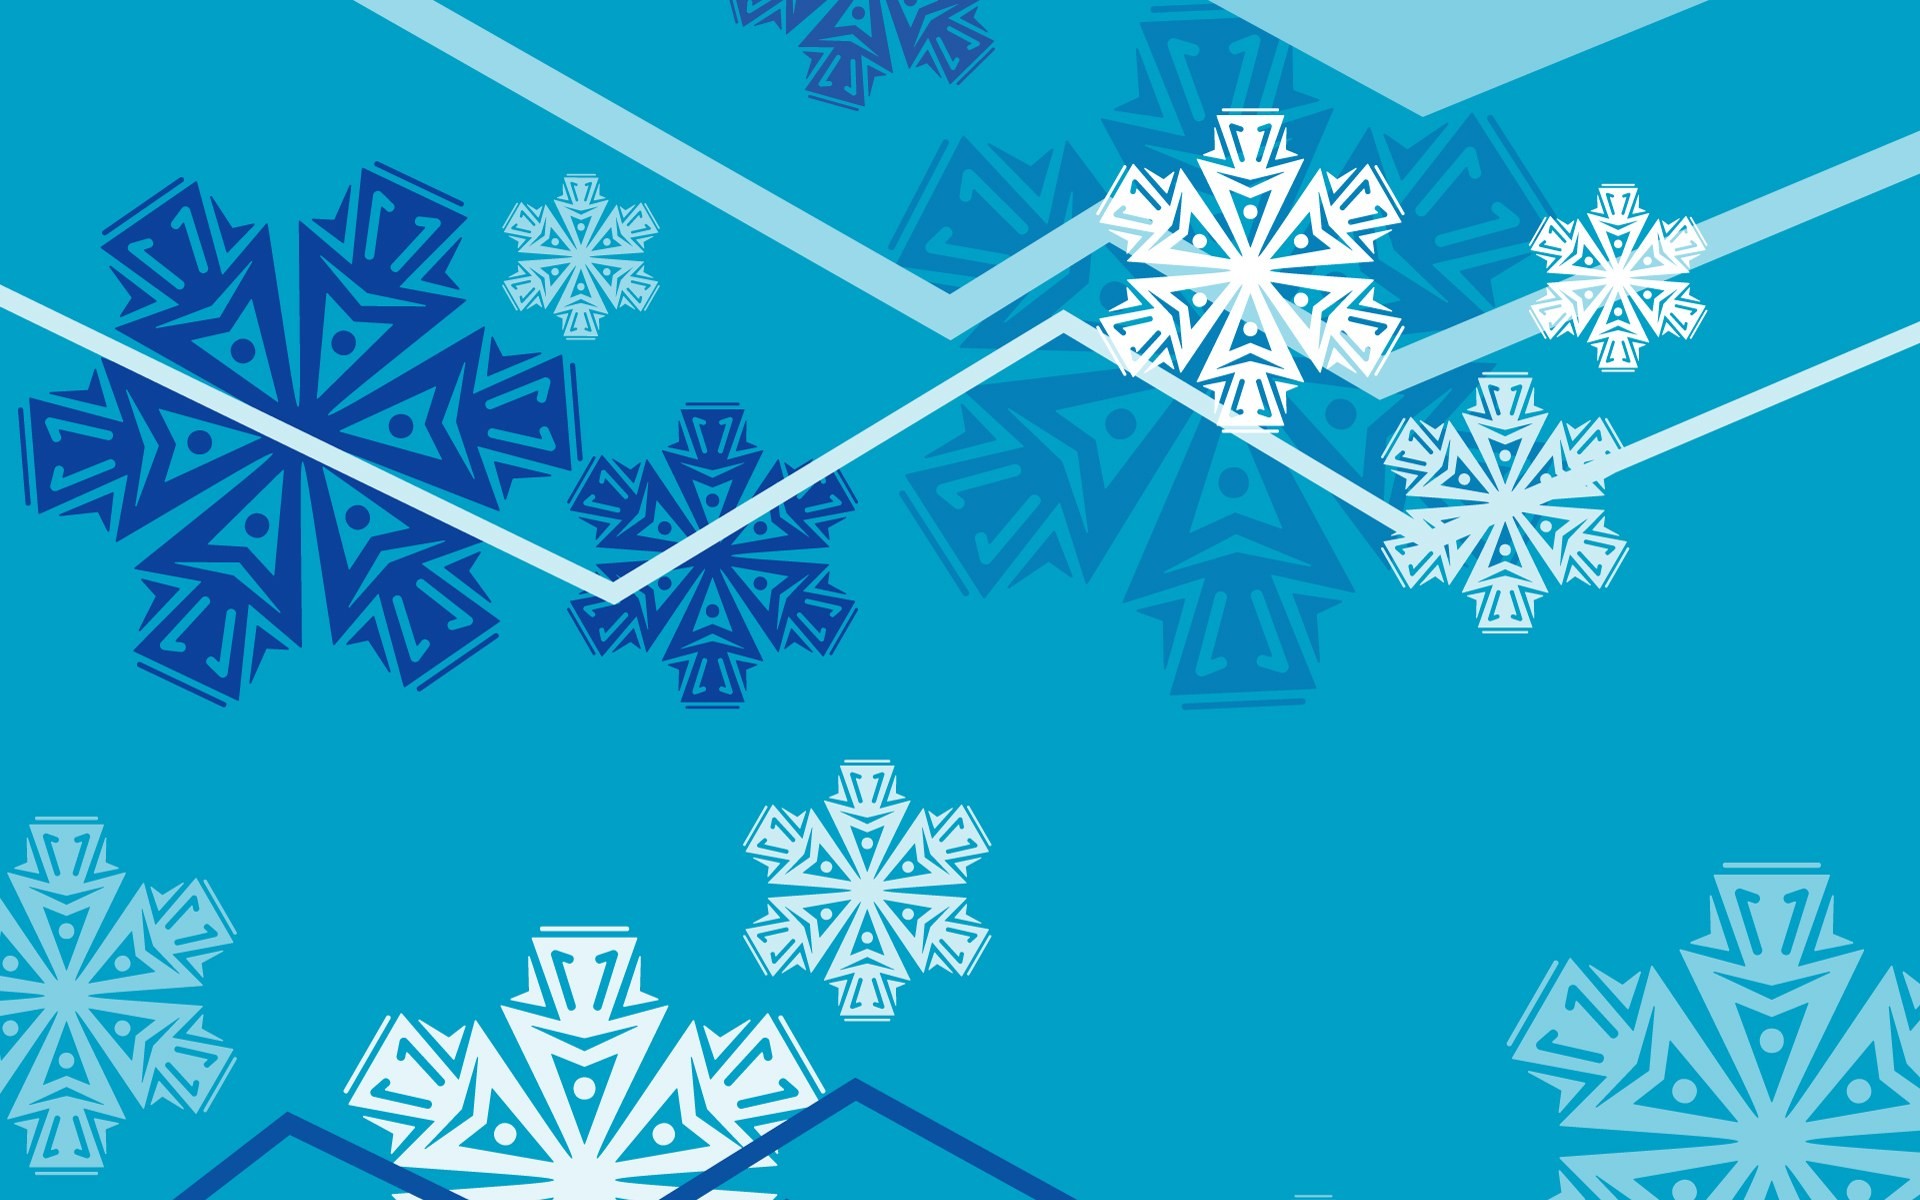 1920x1200 Best 10+ Free winter wallpaper ideas on Pinterest | Snowman wallpaper,  Christmas wallpaper free and Winter wallpapers